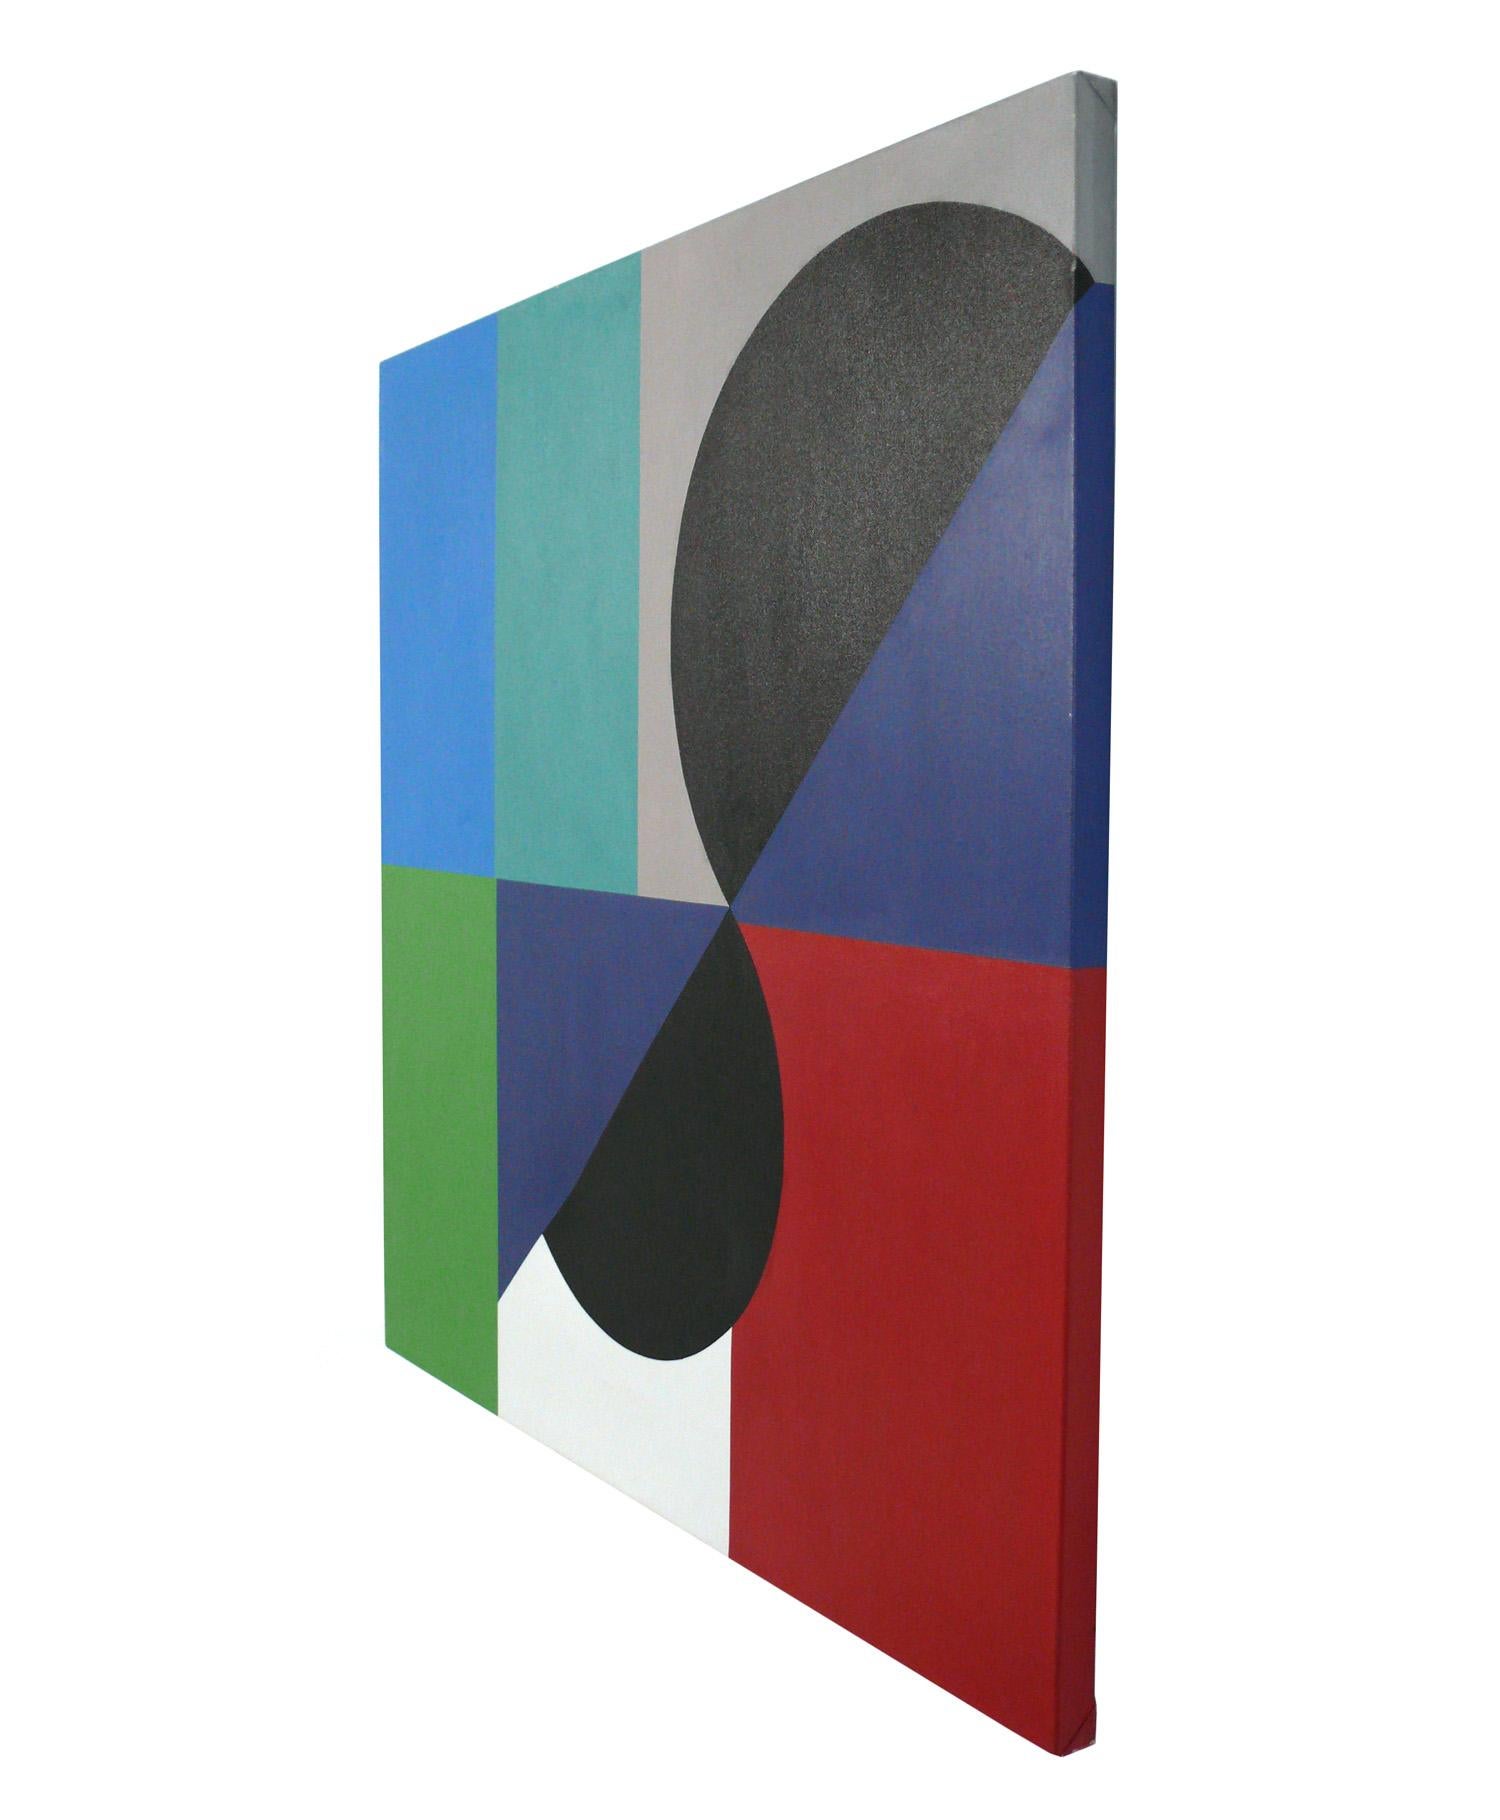 Großformatiges abstraktes Gemälde im Stil von Sonia Delaunay, Künstler unbekannt, amerikanisch, ca. 1990er Jahre. Dieses Gemälde bietet eine Menge farbenfroher Grafik und misst beeindruckende 48